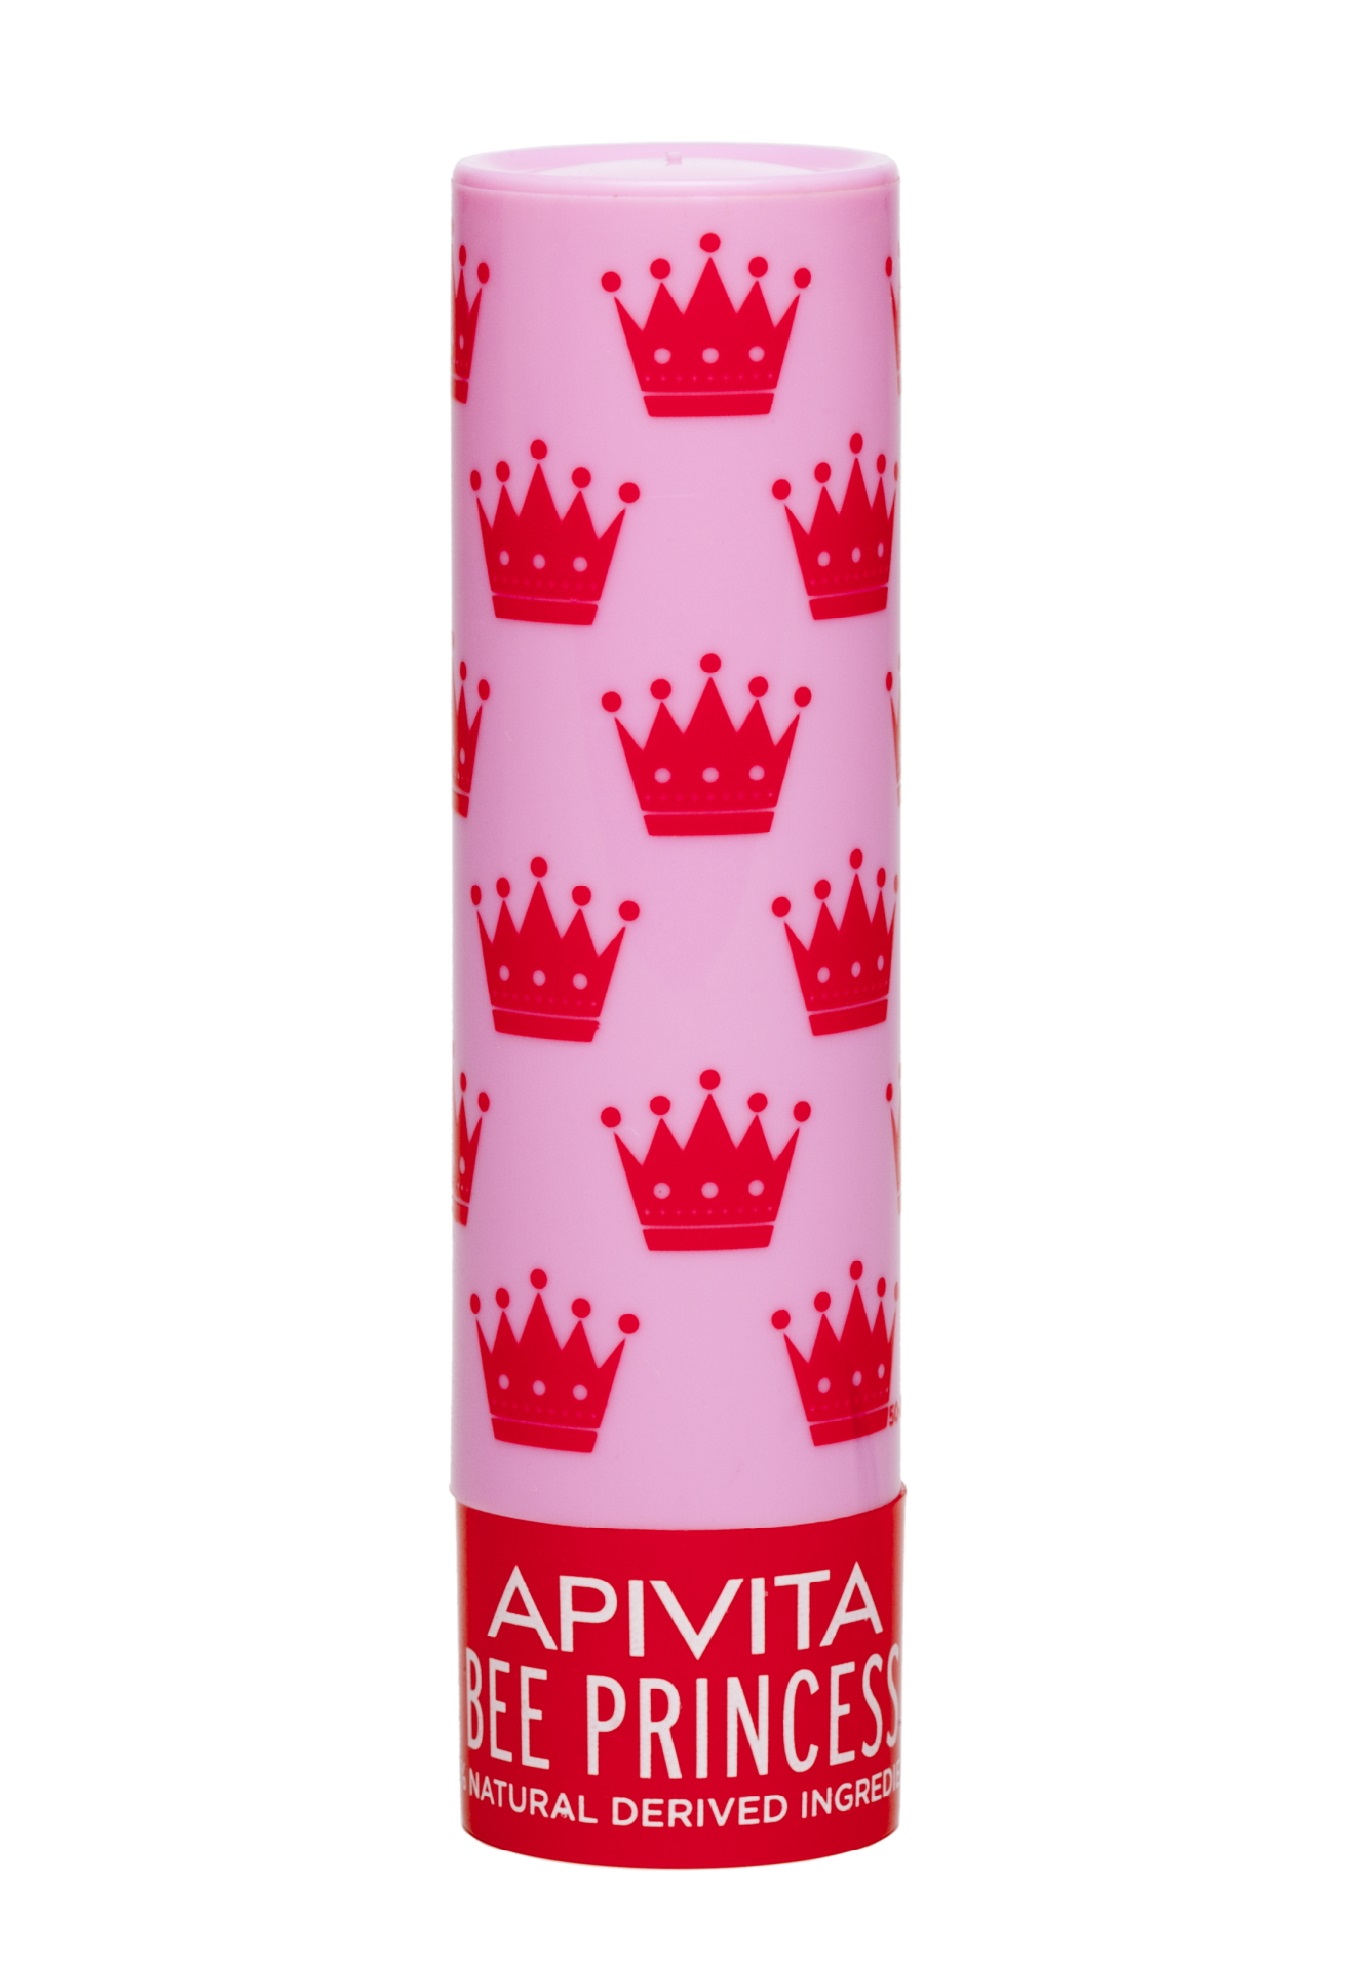 Apivita Уход для губ Принцесса Пчела Био, 4,4 г (Apivita, Lip Care) гигиенические помады апивита уход для губ принцесса пчела био